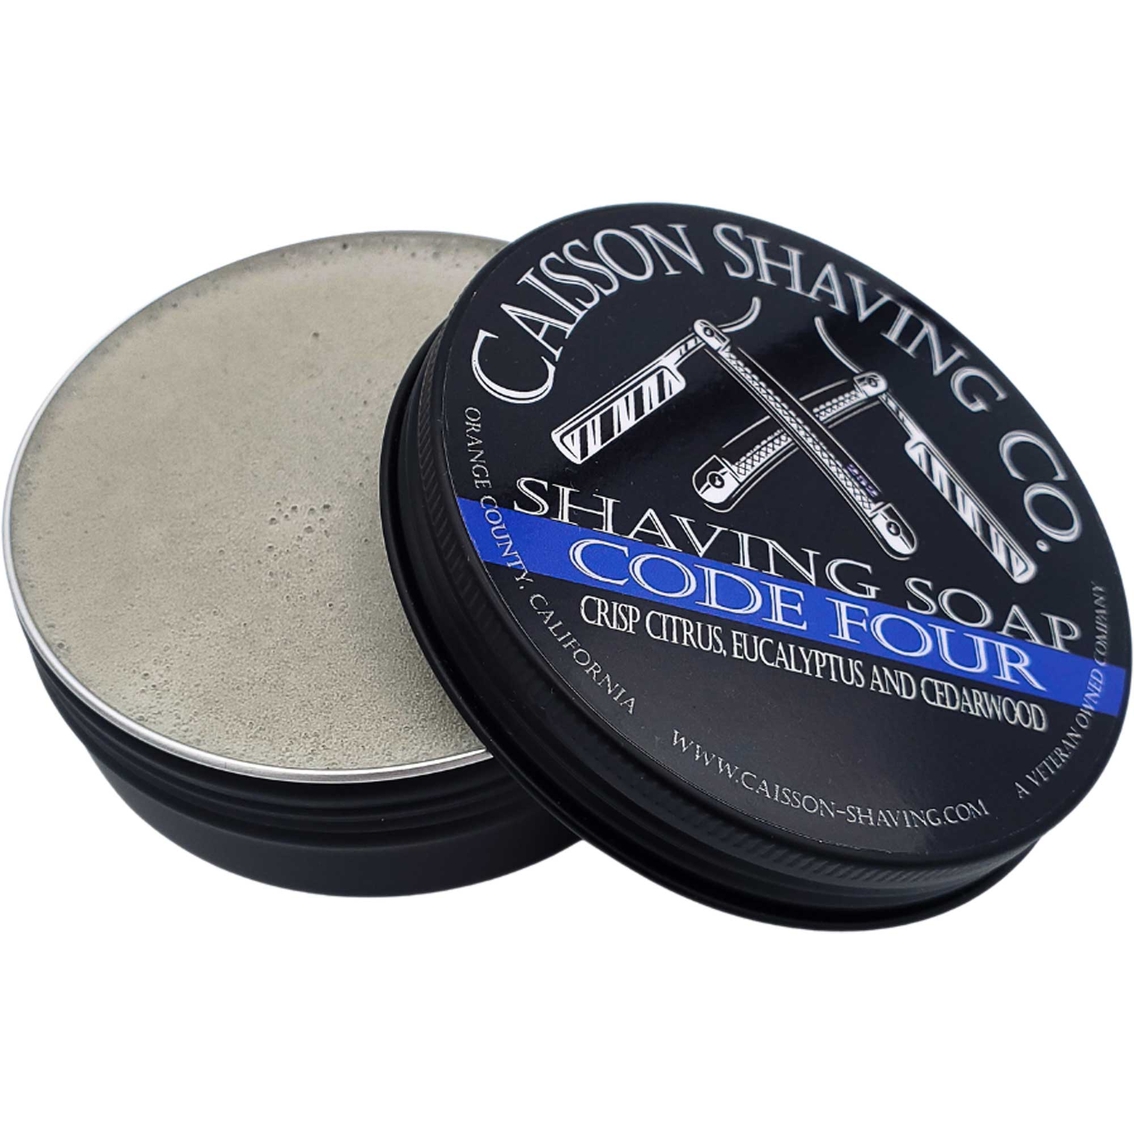 Caisson Shaving Co. Code Four Shaving Soap 4 oz. - Image 2 of 2